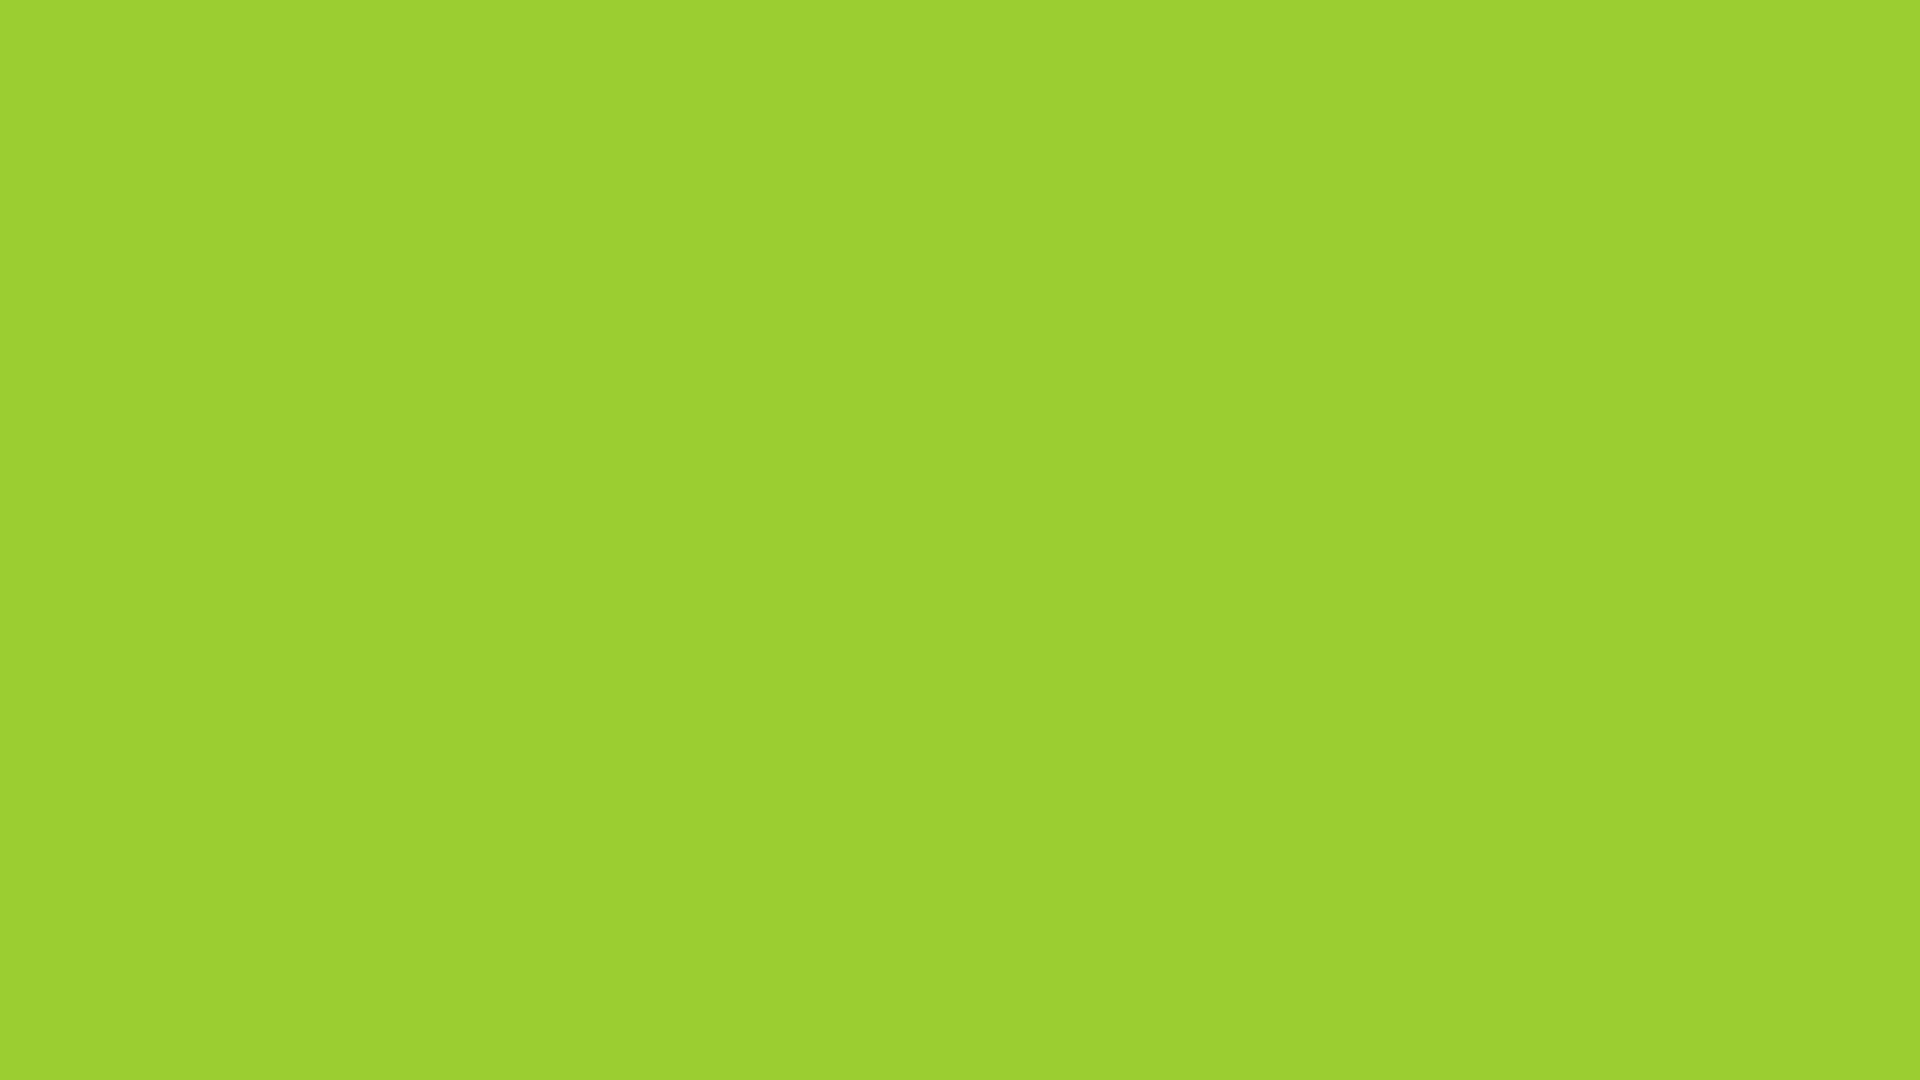 Màu sắc đặc biệt kết hợp giữa màu xanh lá cây và vàng cho ra một gam màu rất tuyệt vời, được sử dụng trong nhiều thiết kế khác nhau. Thử tưởng tượng xem, những hình ảnh trang trí với màu sắc tươi sáng này sẽ tạo nên một không gian tràn đầy sự sống động và năng động. Hãy đến với chúng tôi để khám phá thêm về gam màu yellow-green này.